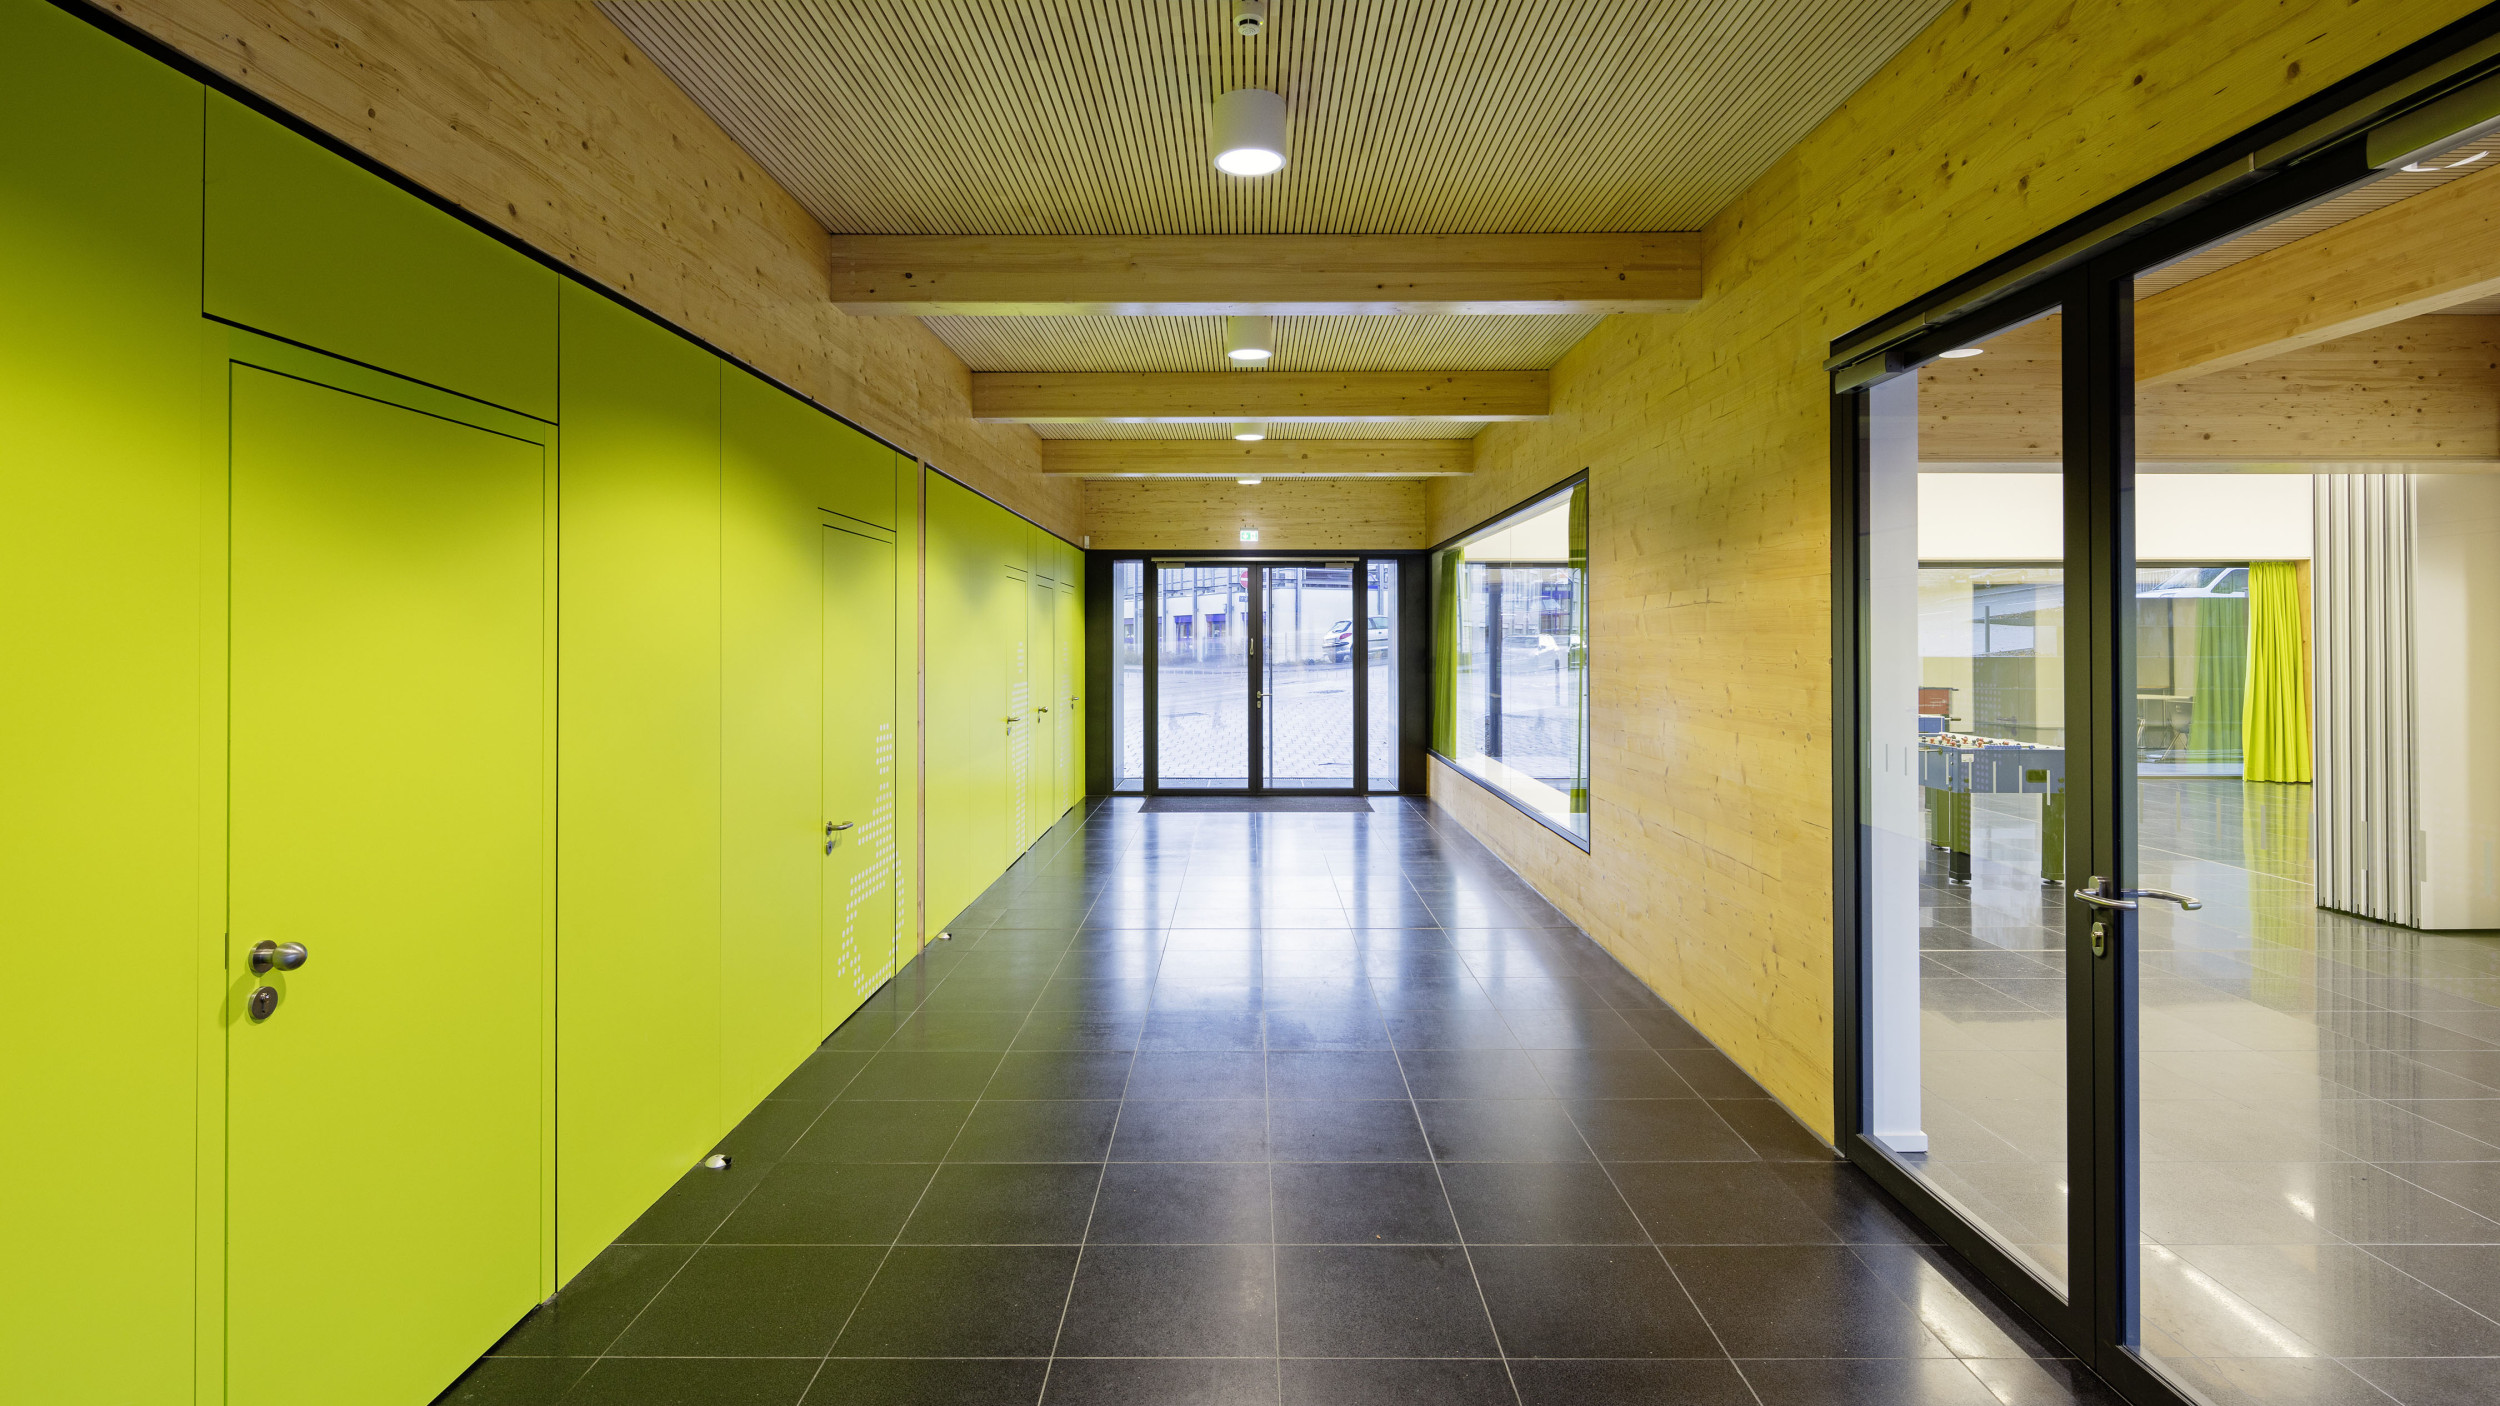 Innenperspektive von einer grünen und einer holzvertäfelten Wand, die den Eingangsbereich definieren.